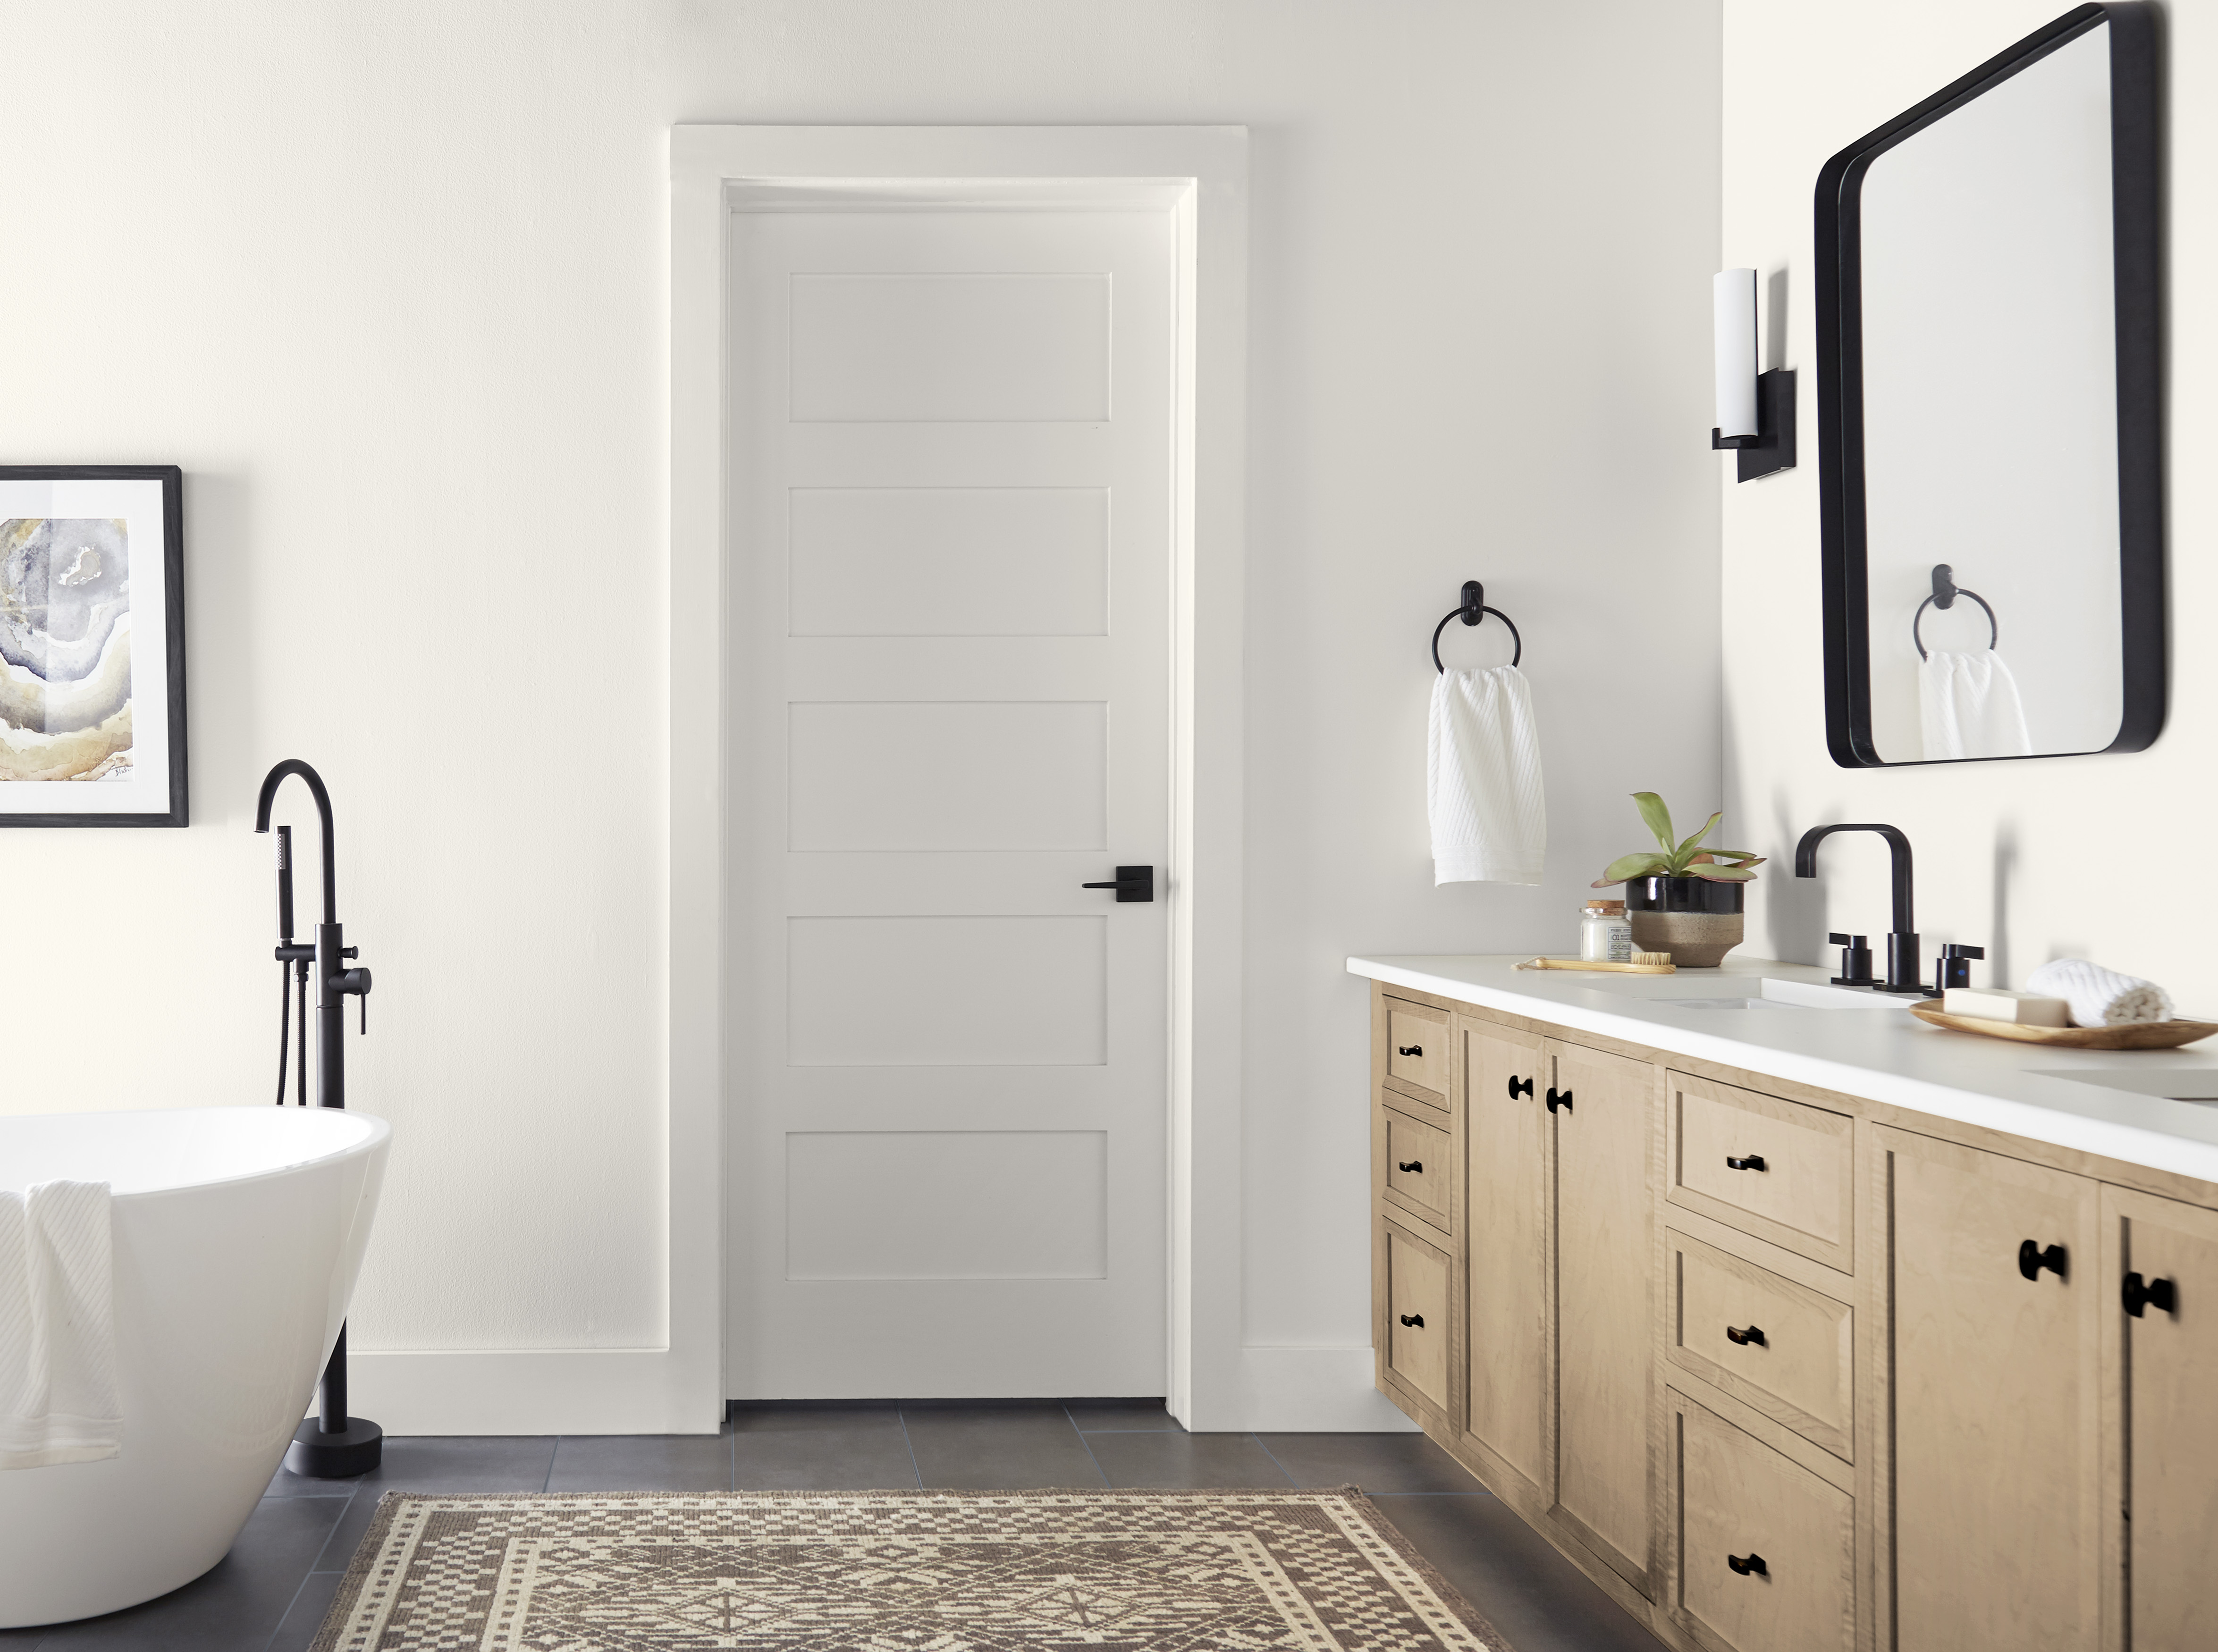 Une salle de bain moderne de style maison de ferme peinte dans une couleur blanche appelée Toile vierge.